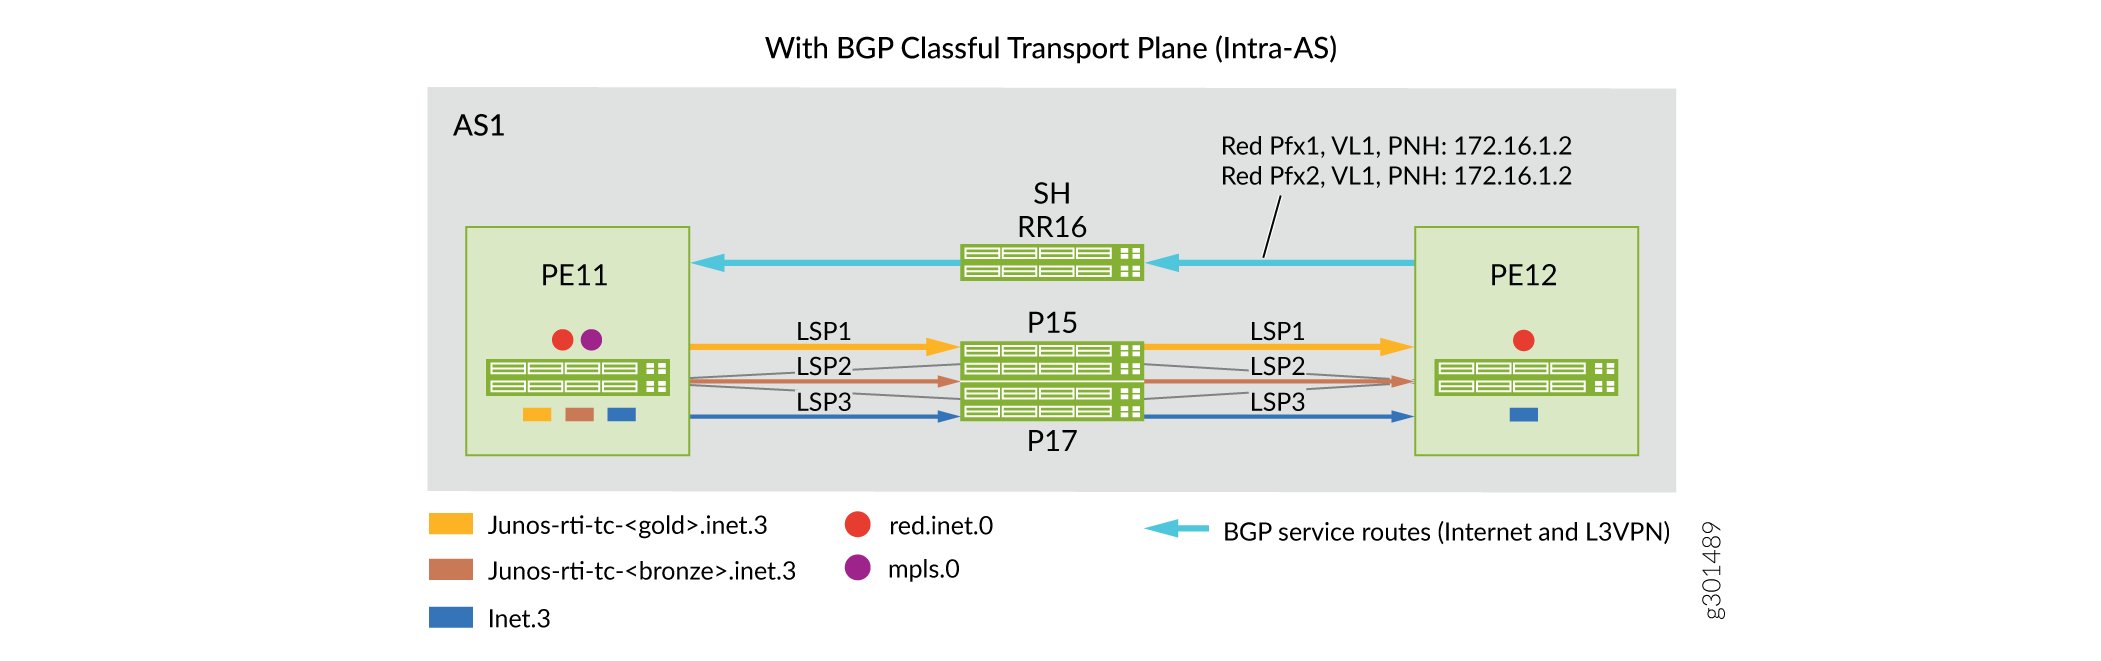 Domaine intra-AS : Scénarios avant/après pour l’implémentation de plans de transport avec classe BGP